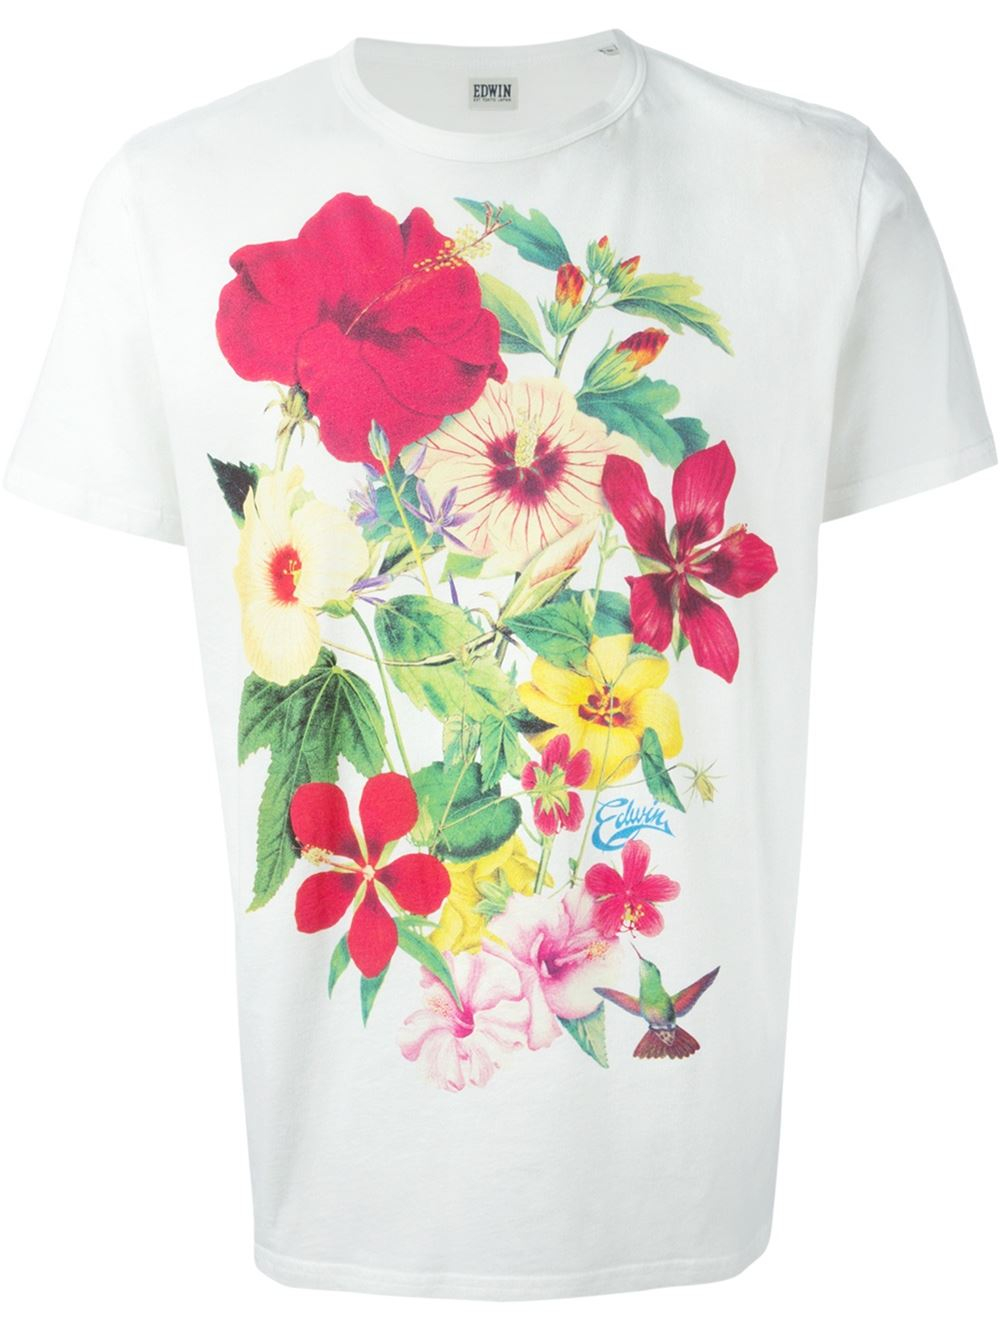 Lyst - Edwin Flower Print T-Shirt in White for Men